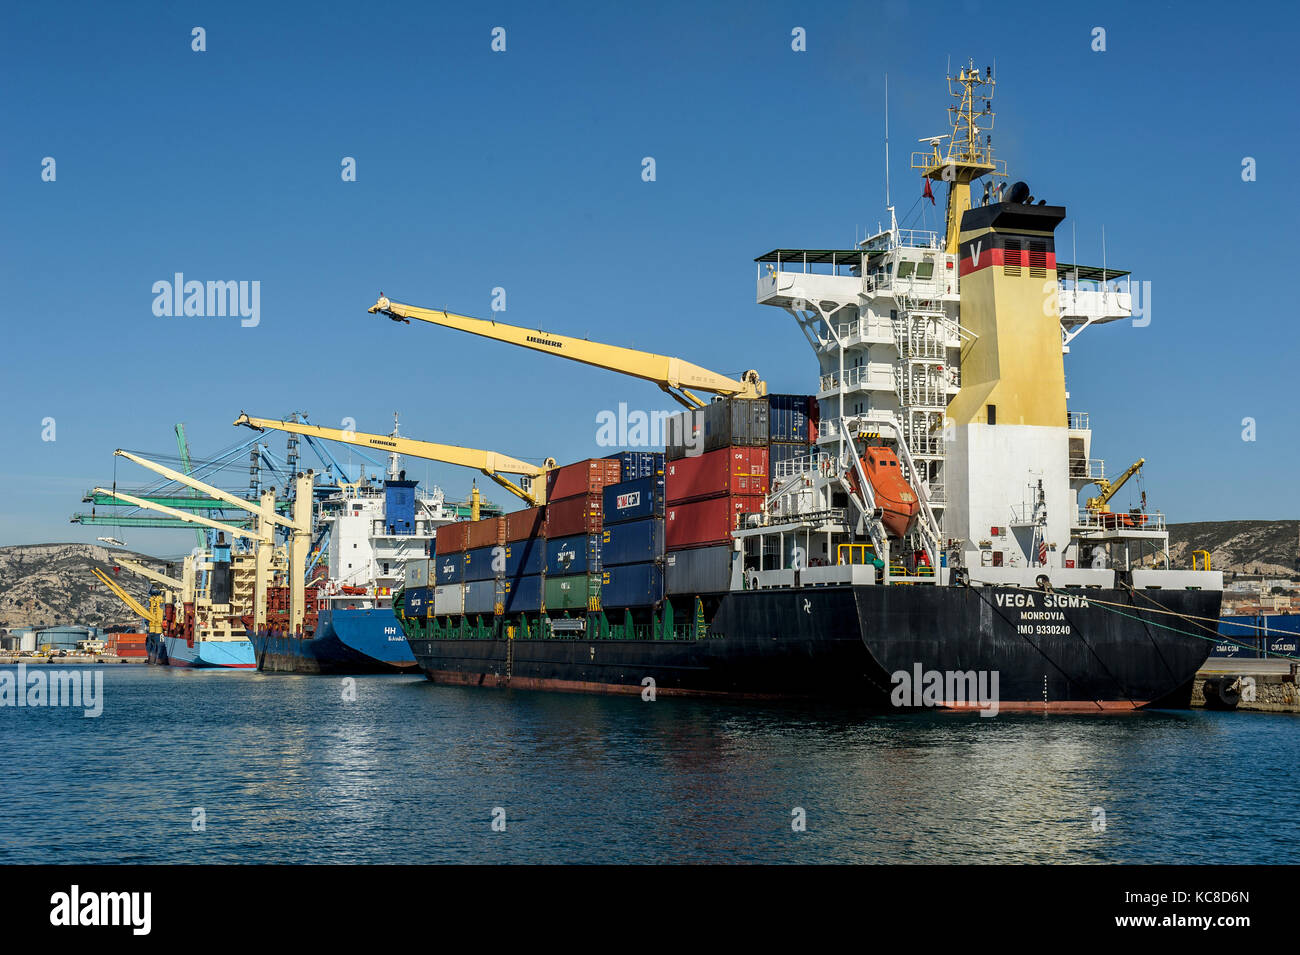 Marsiglia (sud-est della Francia). 2015/03/06. Terminale per container di Marsiglia Fos Port (GPMM francese). CMA GGM nave container "Vega Sigma" Foto Stock